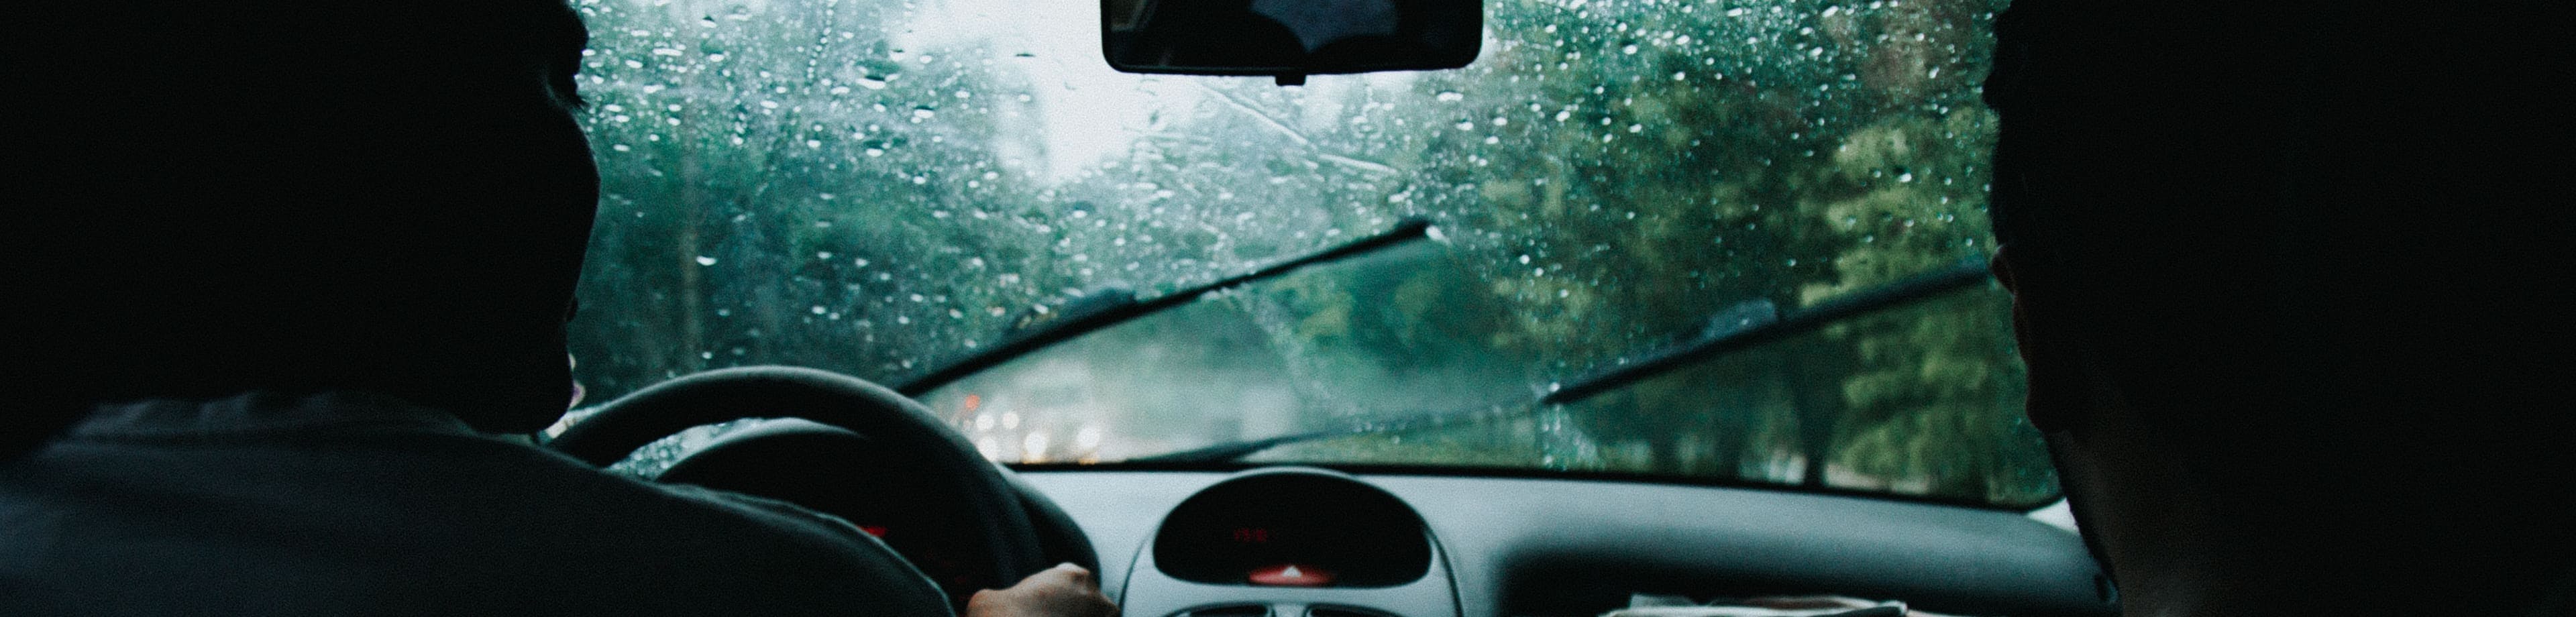 Voorruit van een auto met ruitenwissers tijdens een regenbui